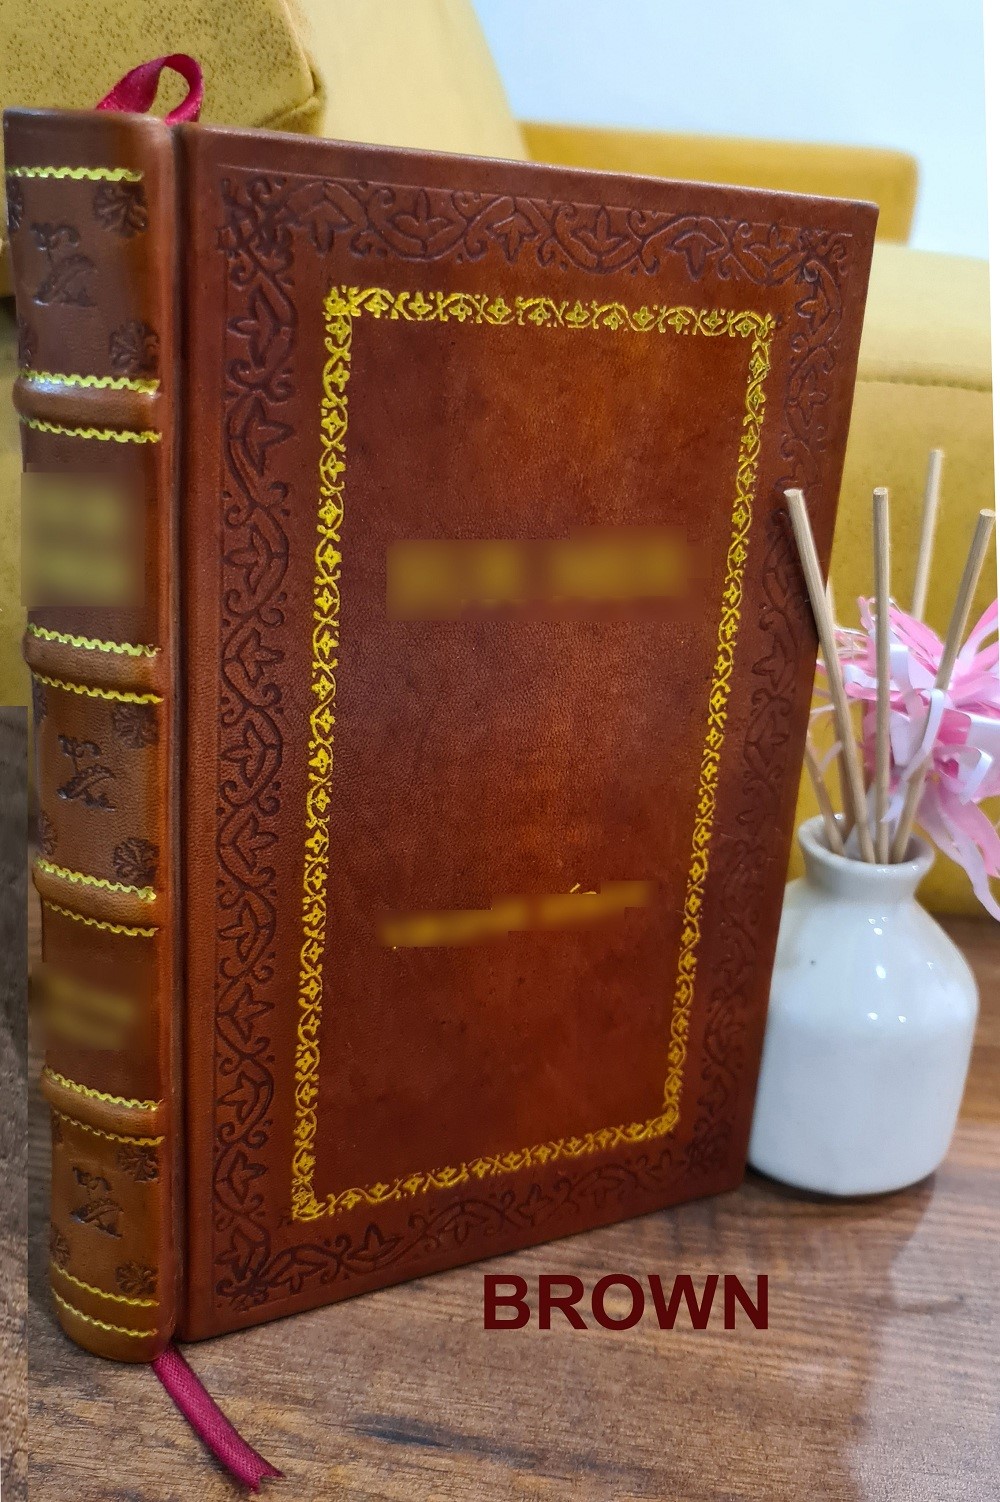 Handbuch der verfassung und verwaltung in Preussen und dem Deutschen Reiche / von graf Hue de Grais. 1897 [Premium Leather Bound] - Hue de Grais, Robert, Graf, -.